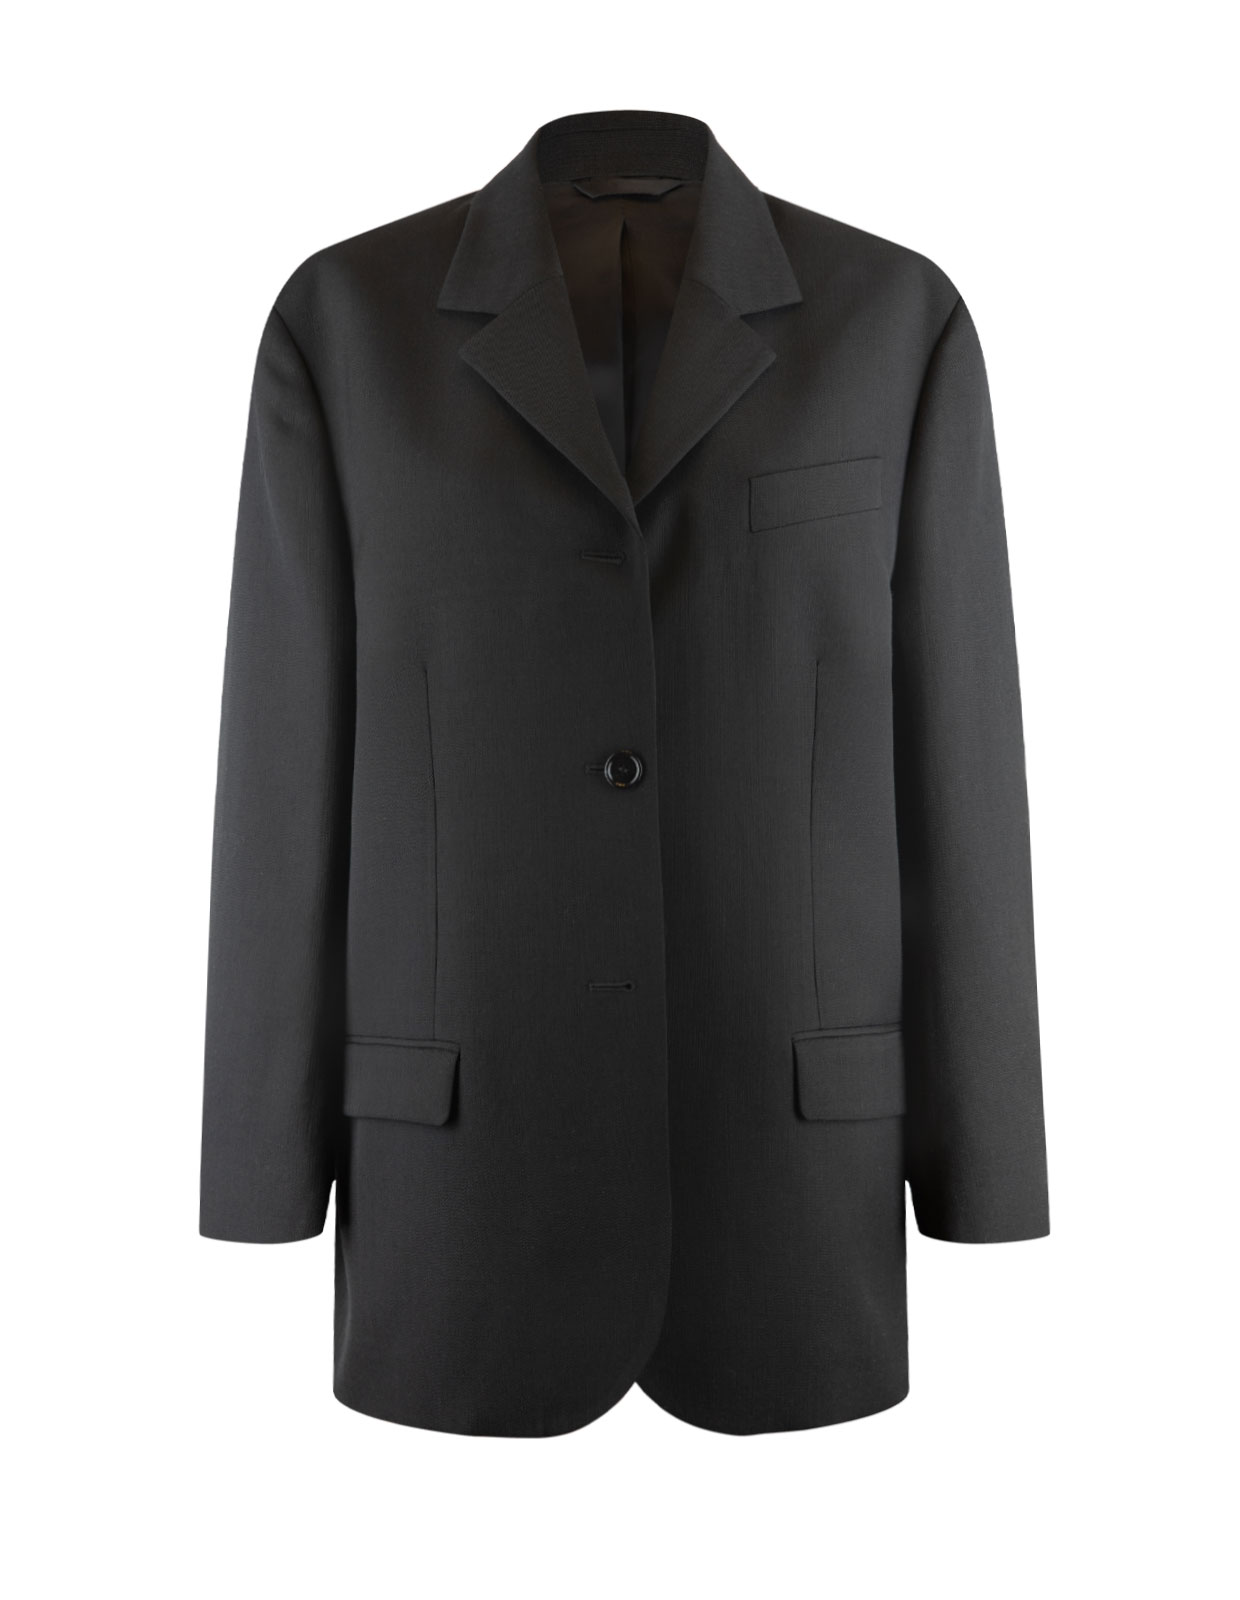 Suit Jacket Black